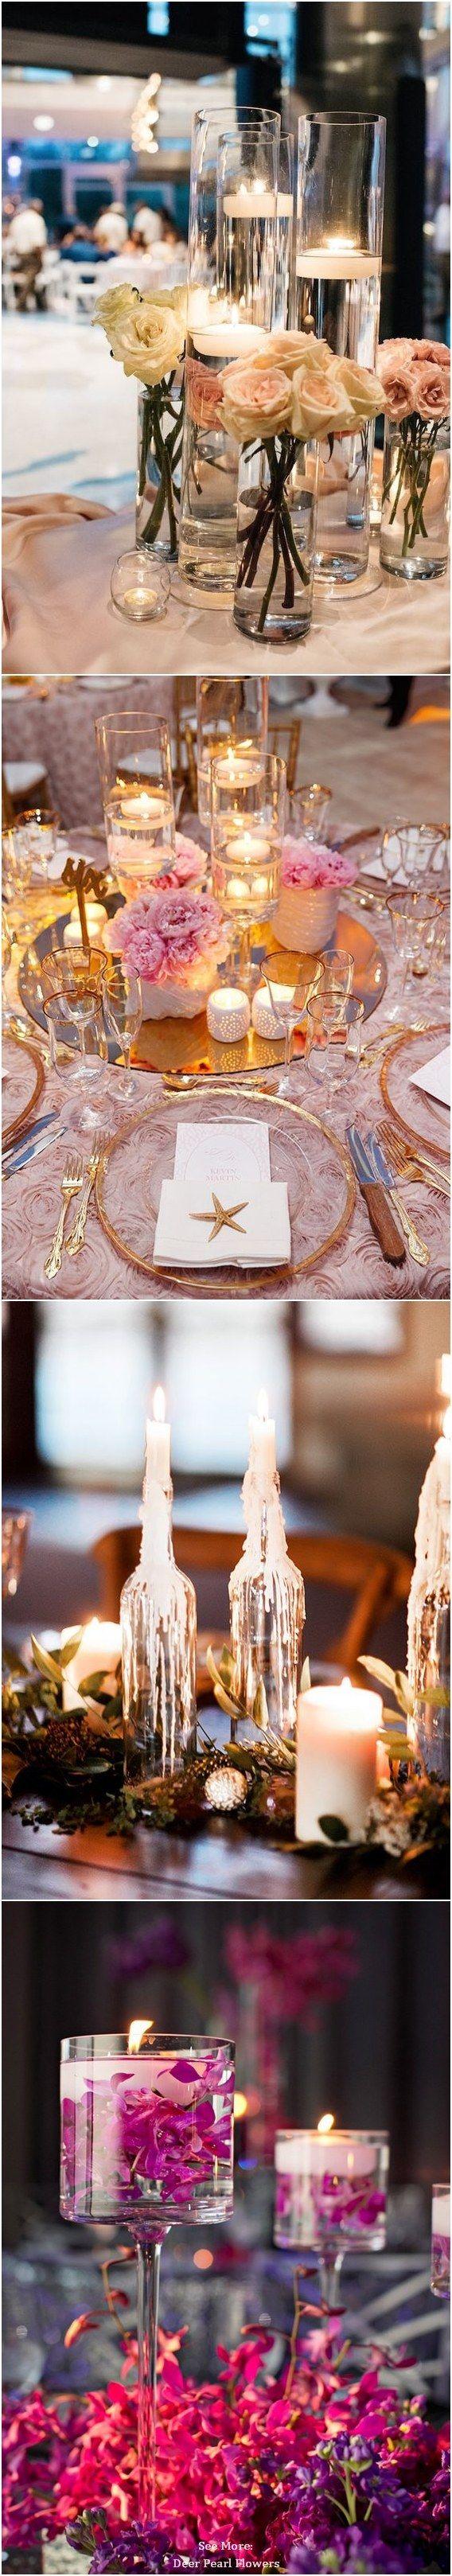 زفاف - 40 Chic Romantic Wedding Ideas Using Candles